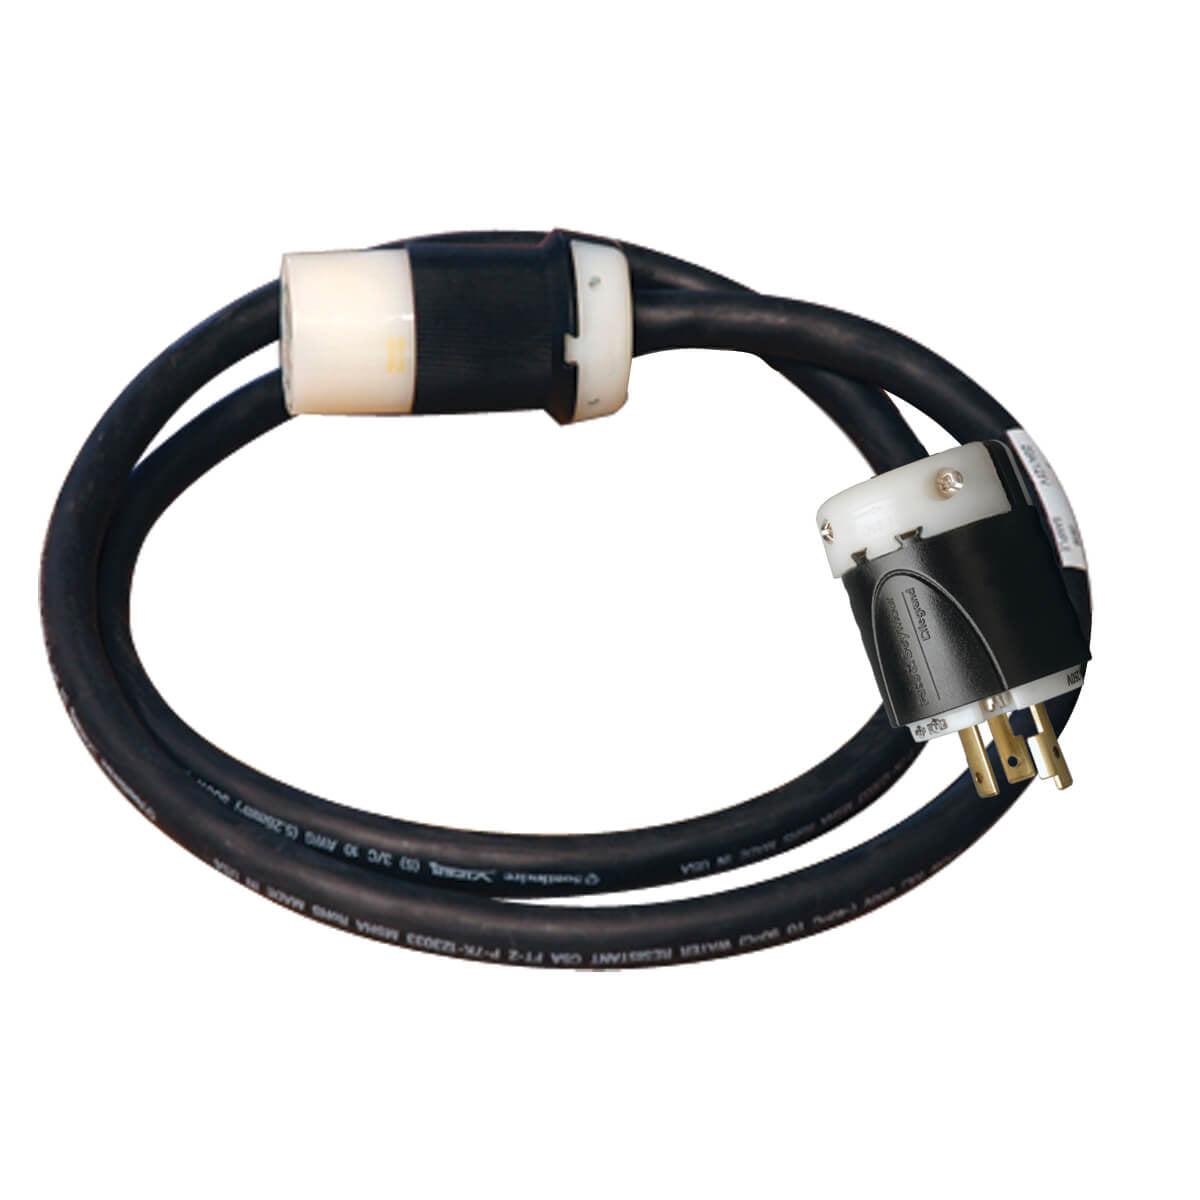 Tripp Lite Suwel520C-20 Power Cable Black 6 M Power Plug Type L Nema L5-20R